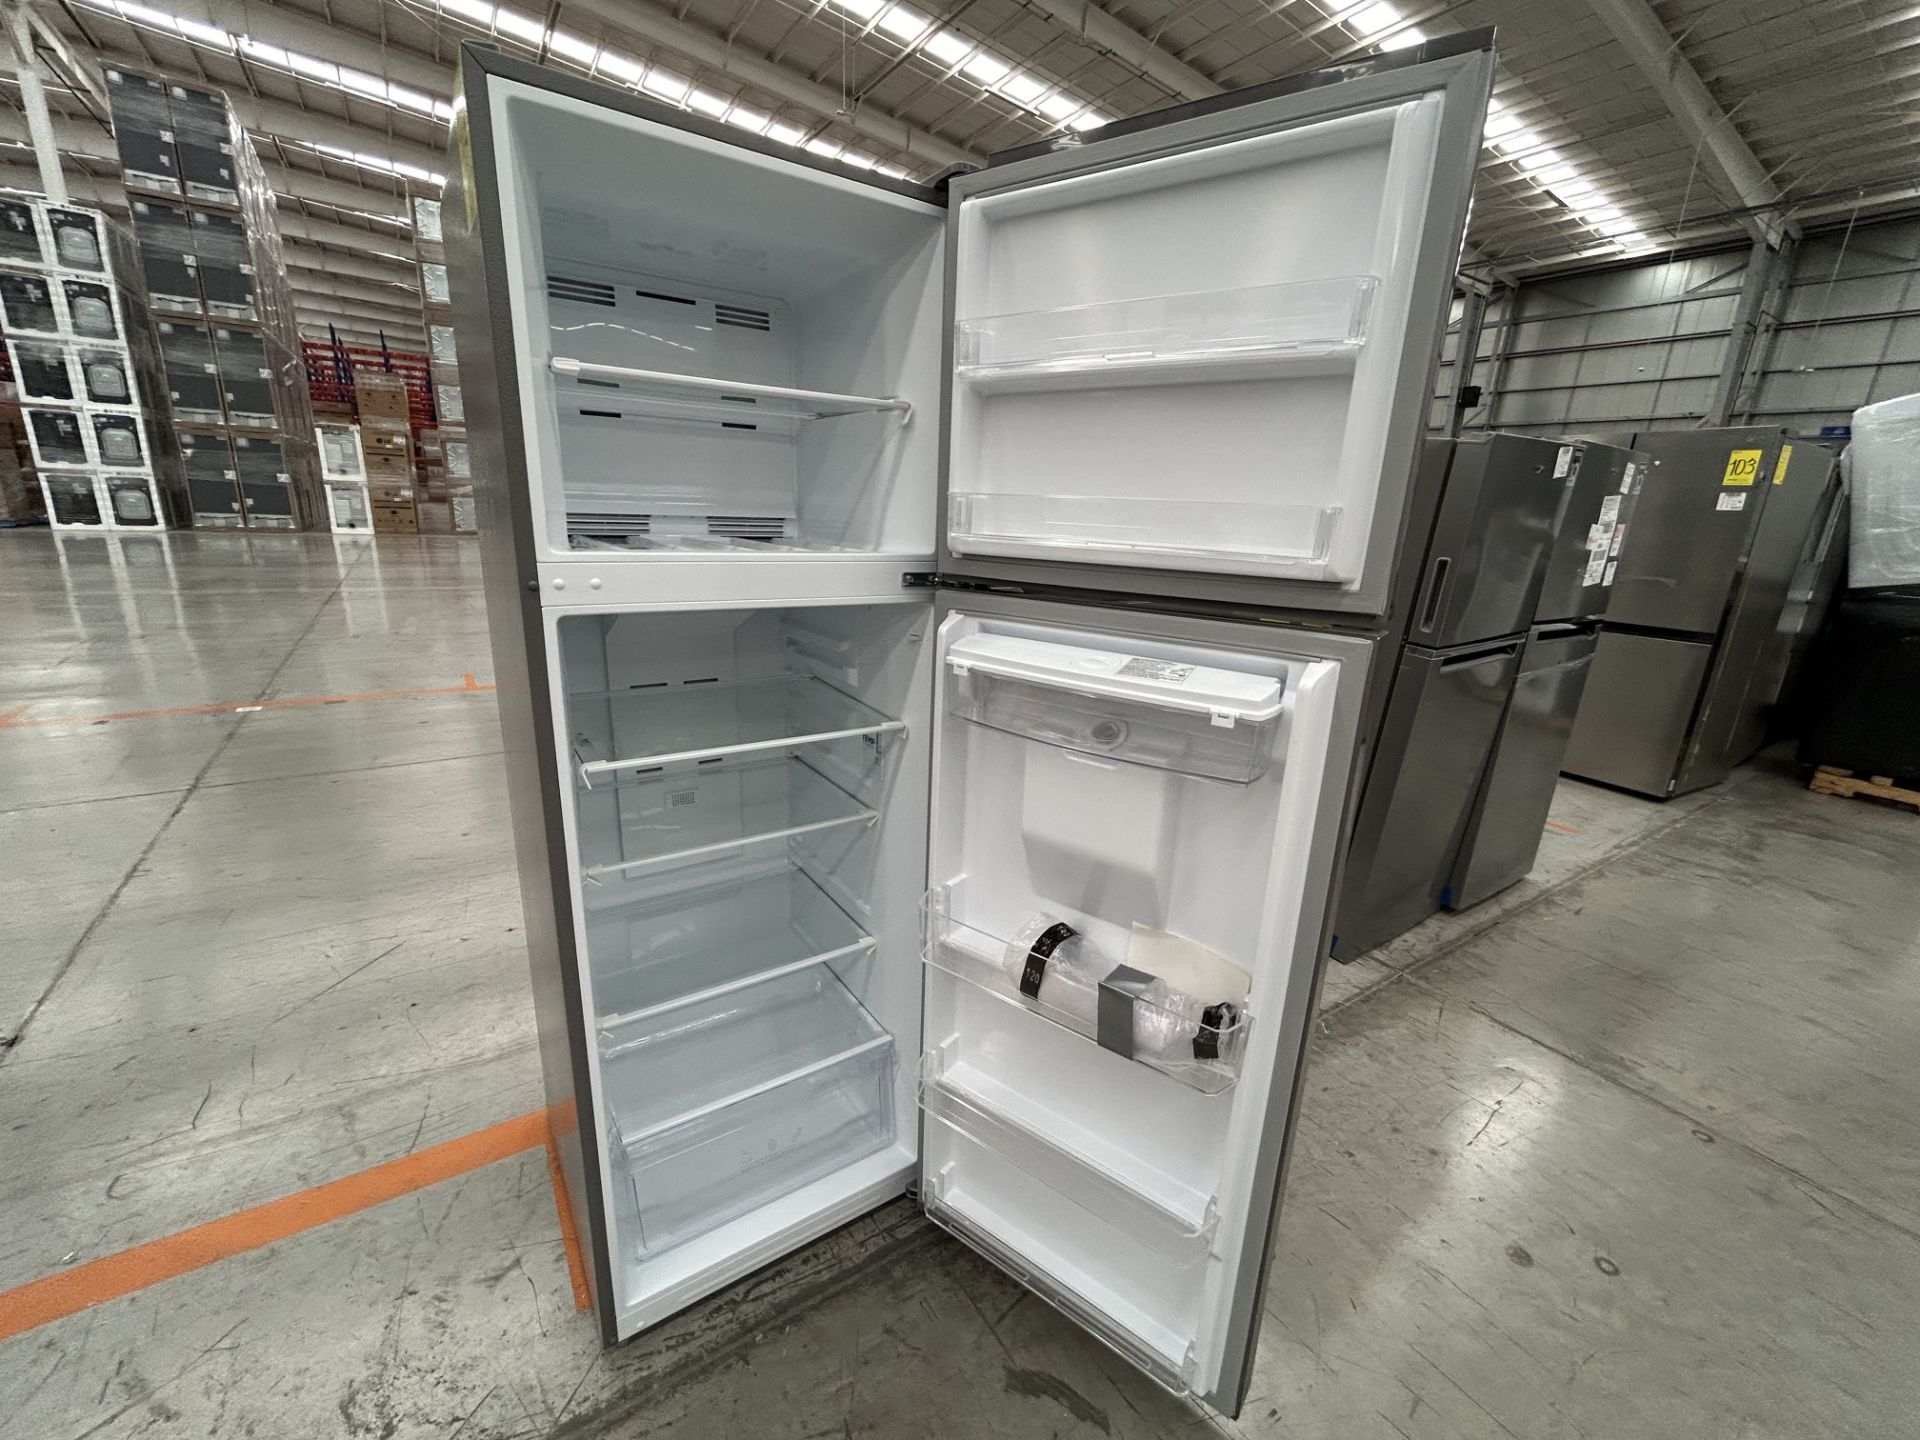 Lote de 2 Refrigeradores contiene: 1 Refrigerador con dispensador de agua Marca WINIA, Modelo WRT12 - Image 5 of 6